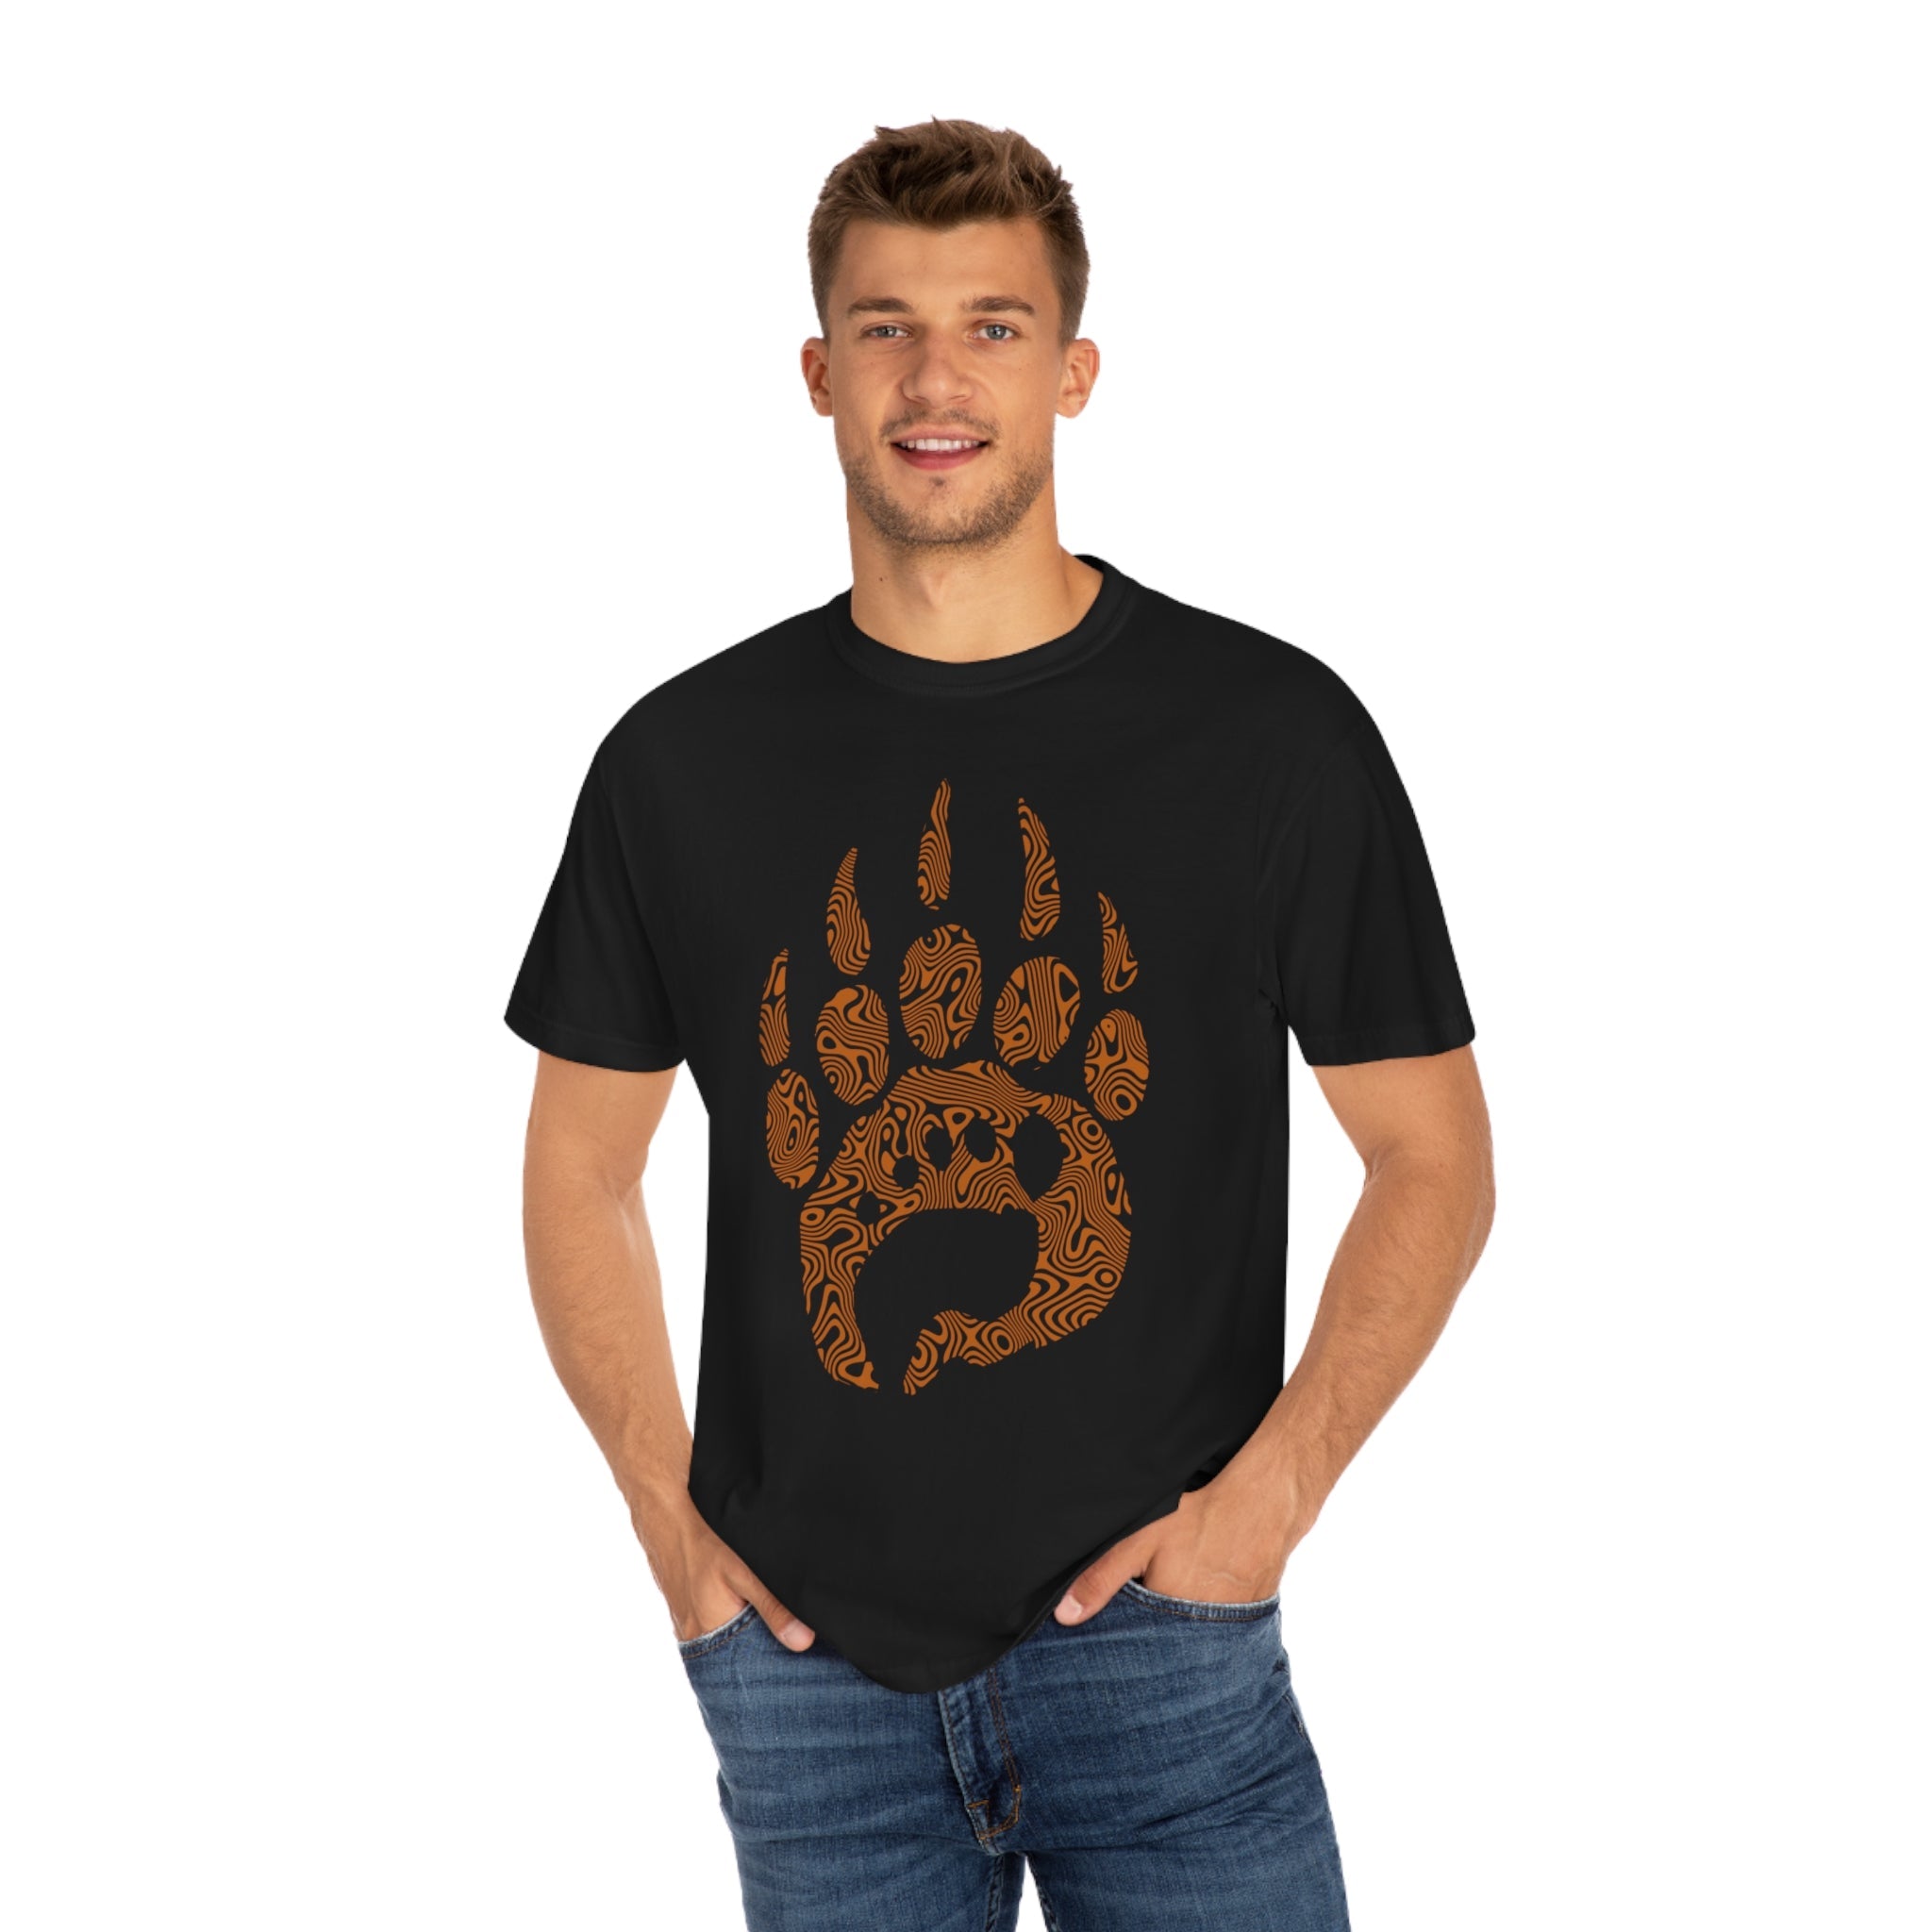 Bearfoot x CSRT T-shirt